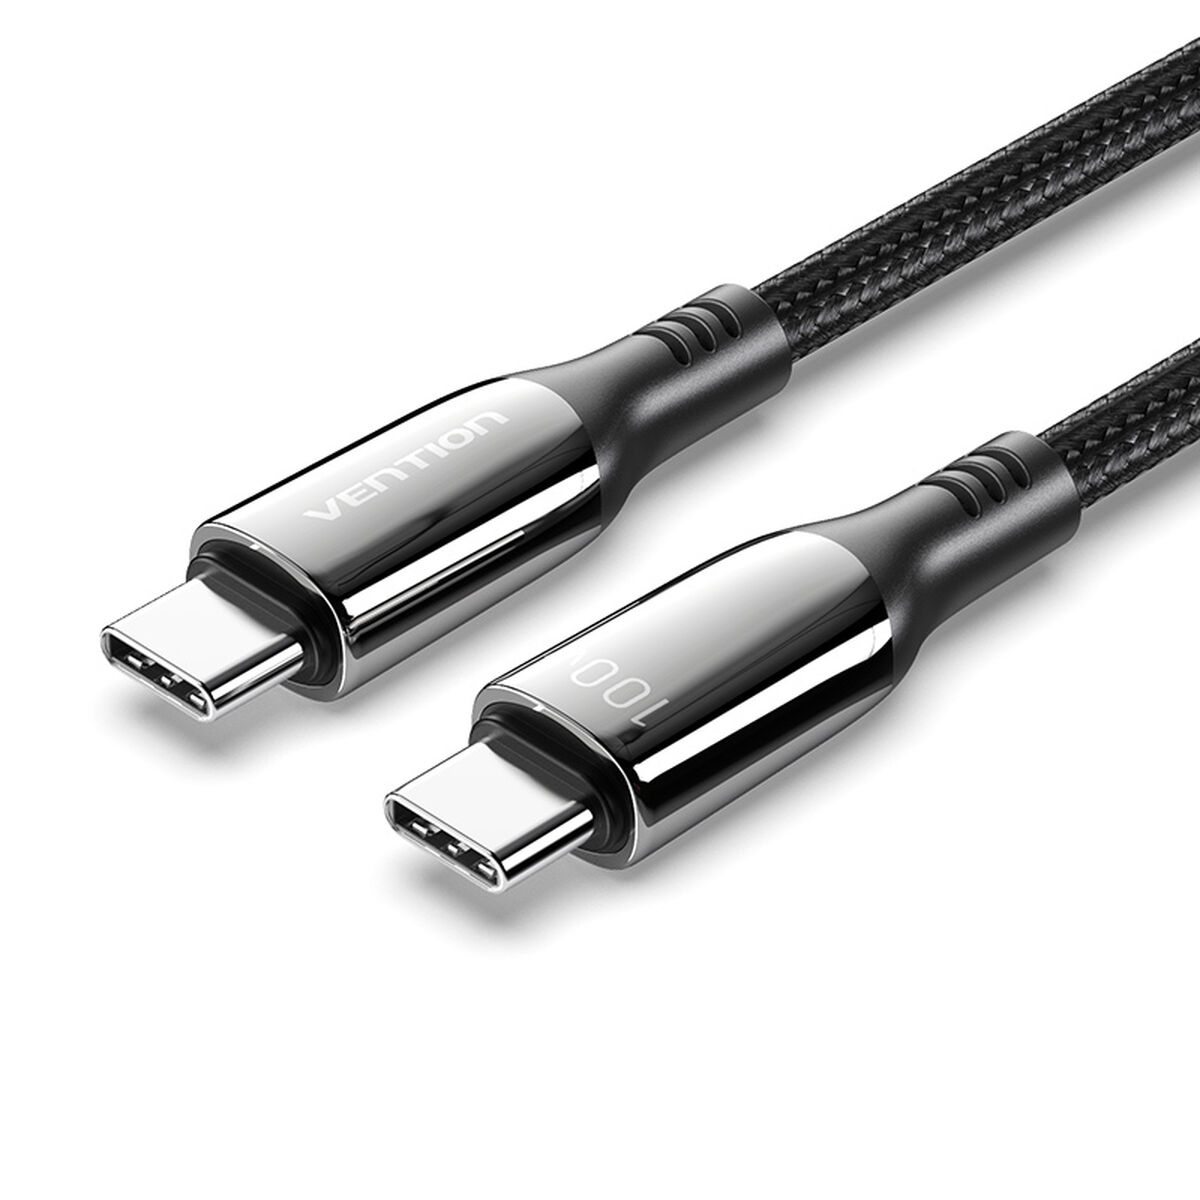 Osta tuote USB-Kaapeli Vention CTKBH 2 m Musta (1 osaa) verkkokaupastamme Korhone: Urheilu & Vapaa-aika 20% alennuksella koodilla VIIKONLOPPU